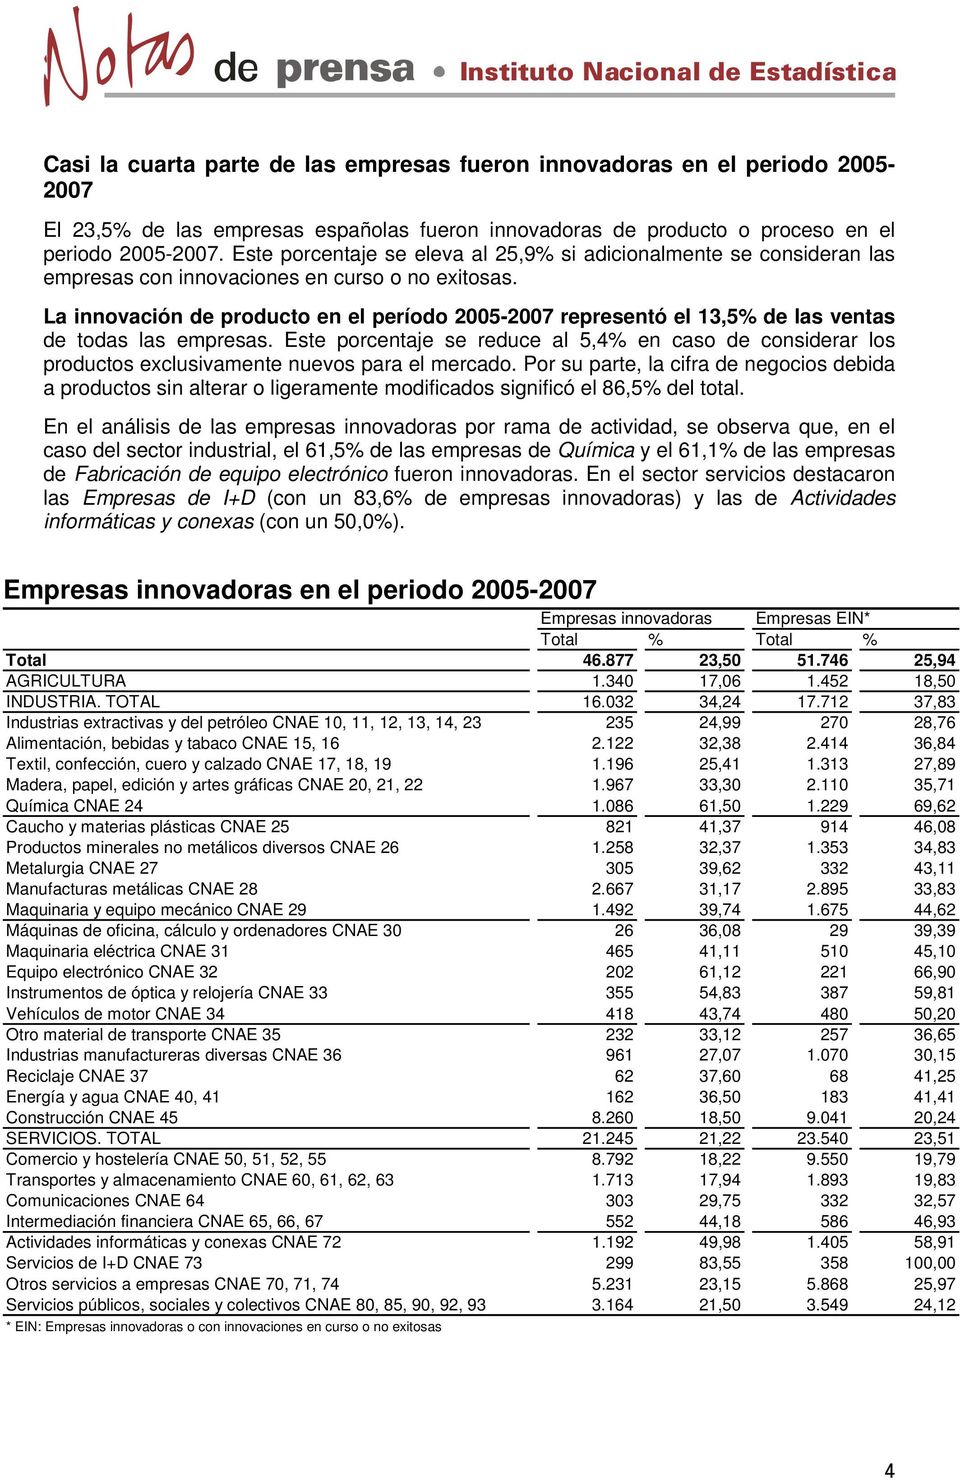 La innovación de producto en el período 2005-2007 representó el 13,5% de las ventas de todas las empresas.